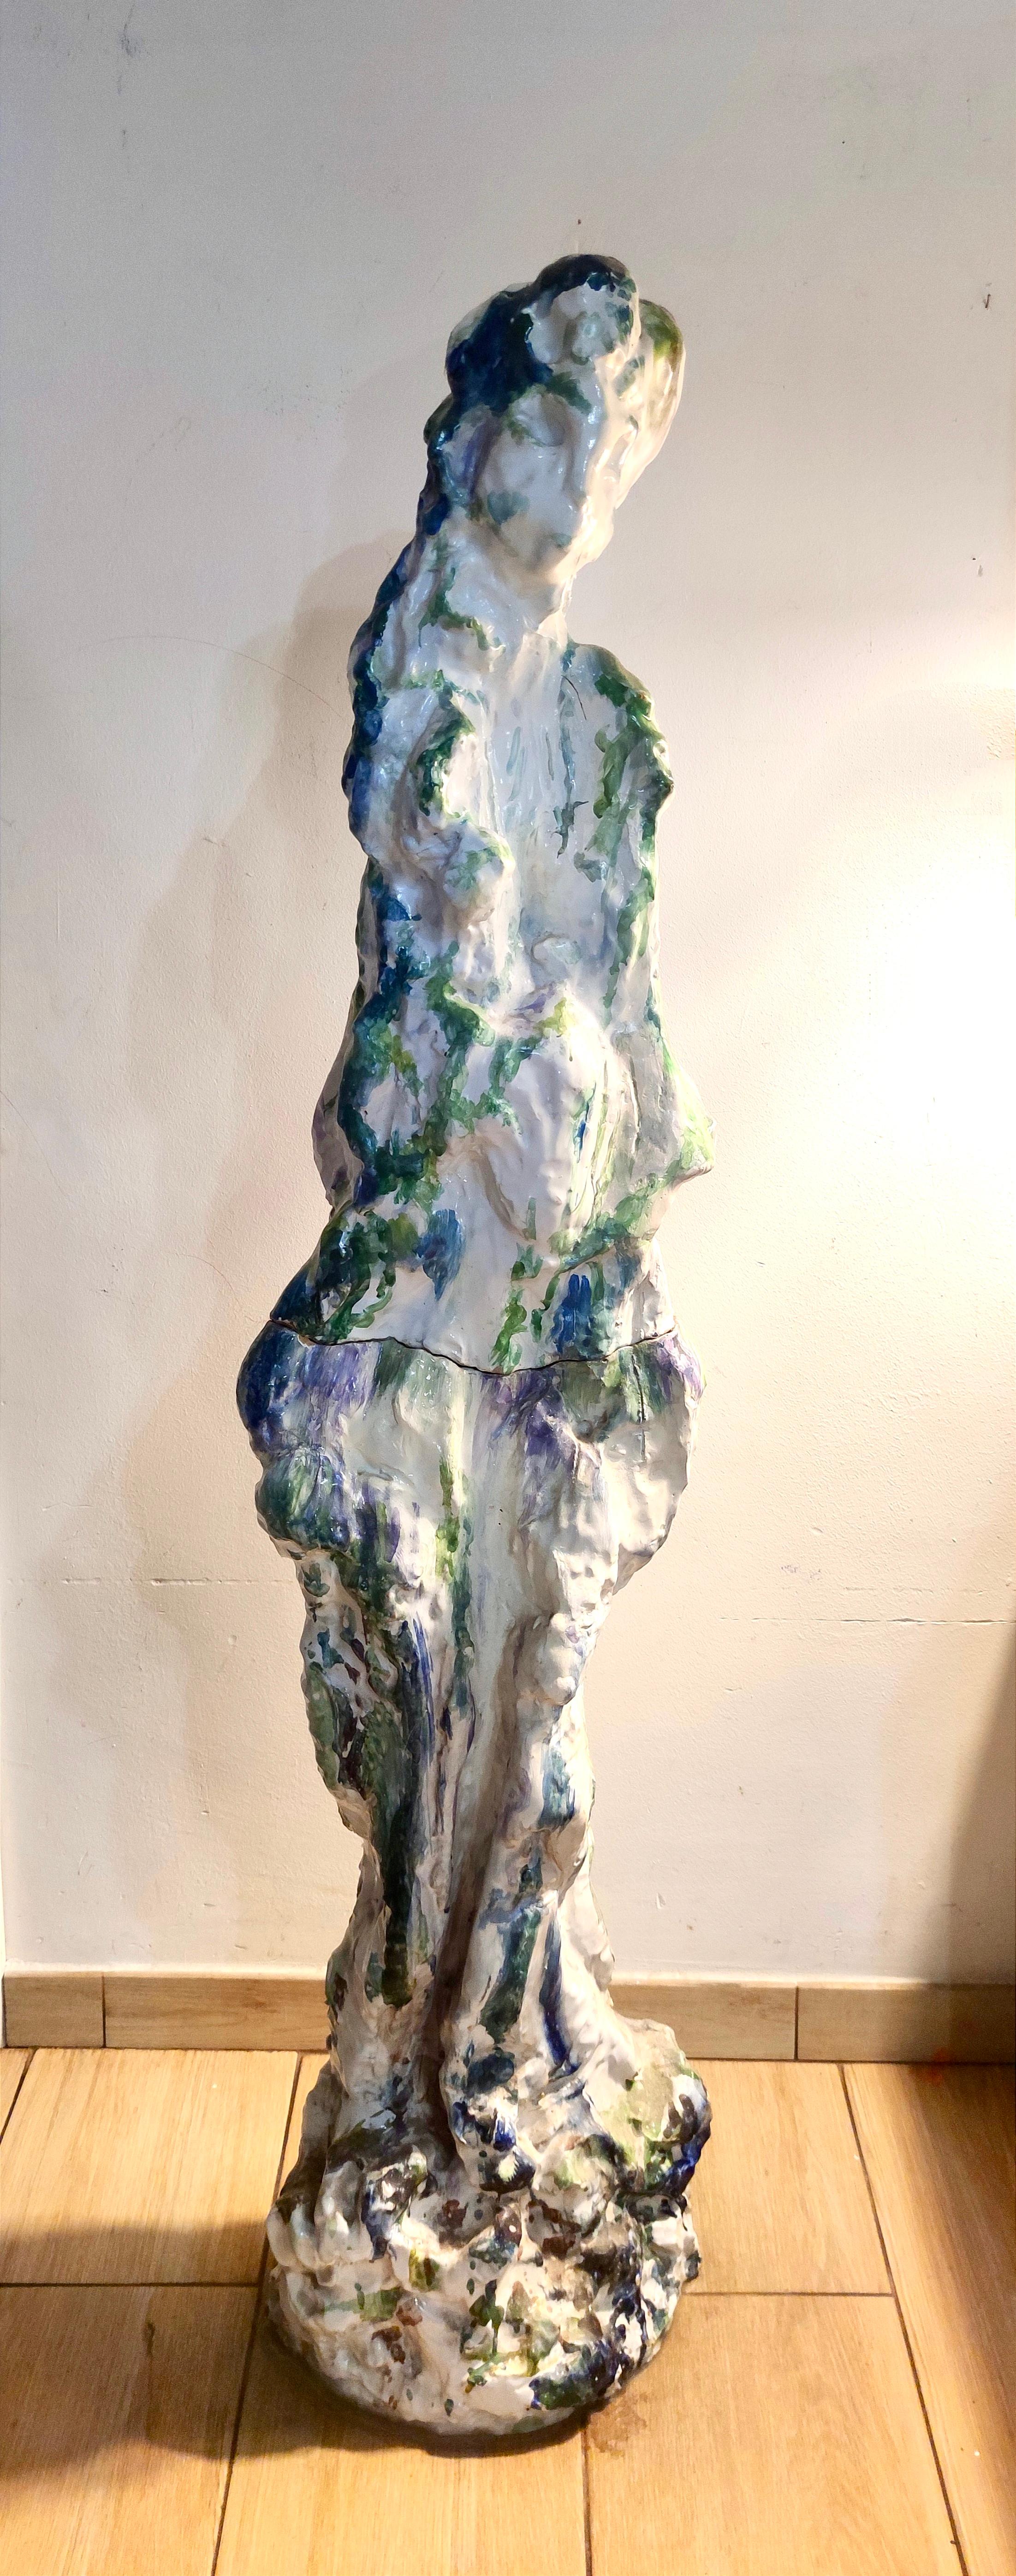 Hergestellt in Italien in den 70er Jahren von Ernesto Treccani.
Es handelt sich um ein unglaubliches Stück aus poliertem Steingut, das perfekt in ein Museum passen würde.

Maße: Höhe: 140 cm
Tiefe: 41 cm
Tiefe: 22 cm

Bestellen Sie es jetzt!
Wir